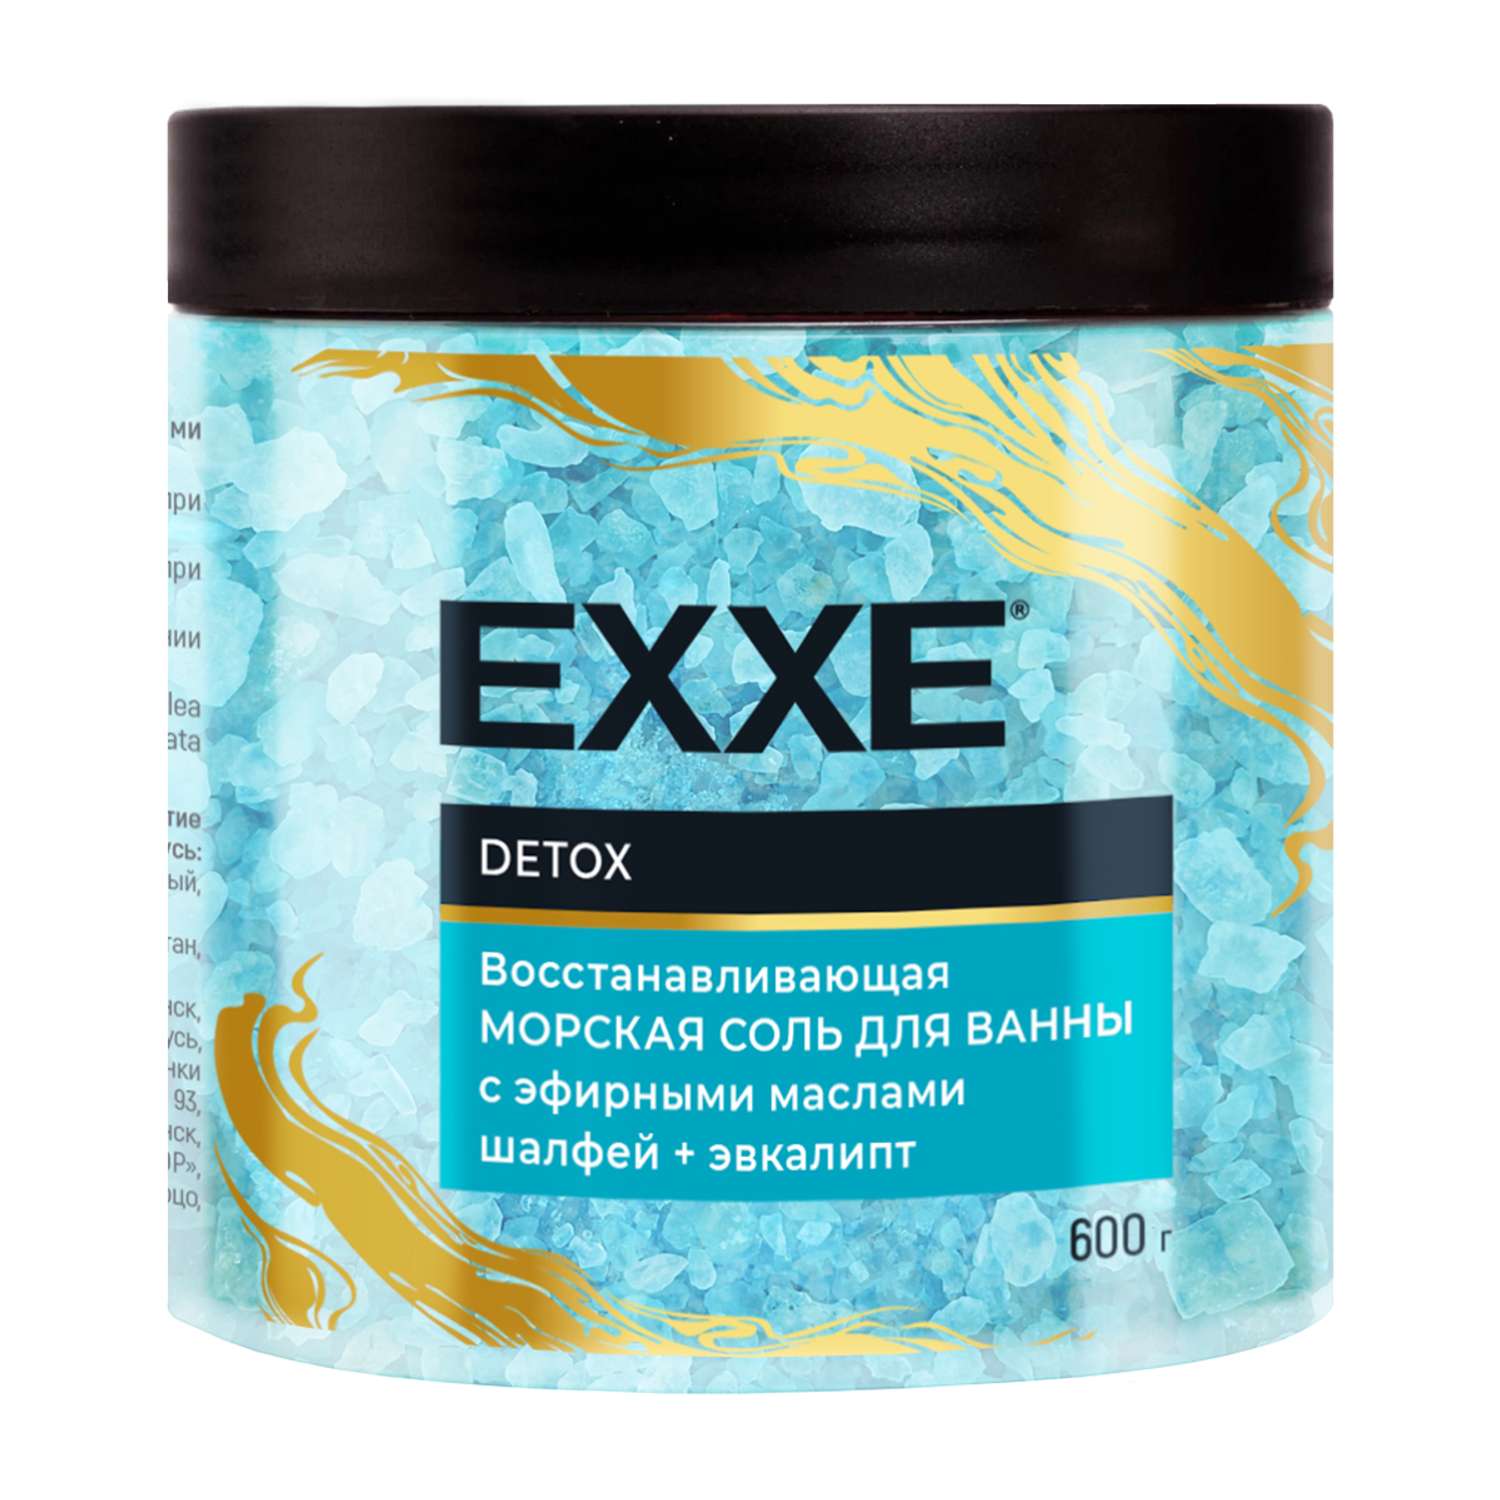 Соль для ванны EXXE Detox Восстанавливающая 600 г - фото 1